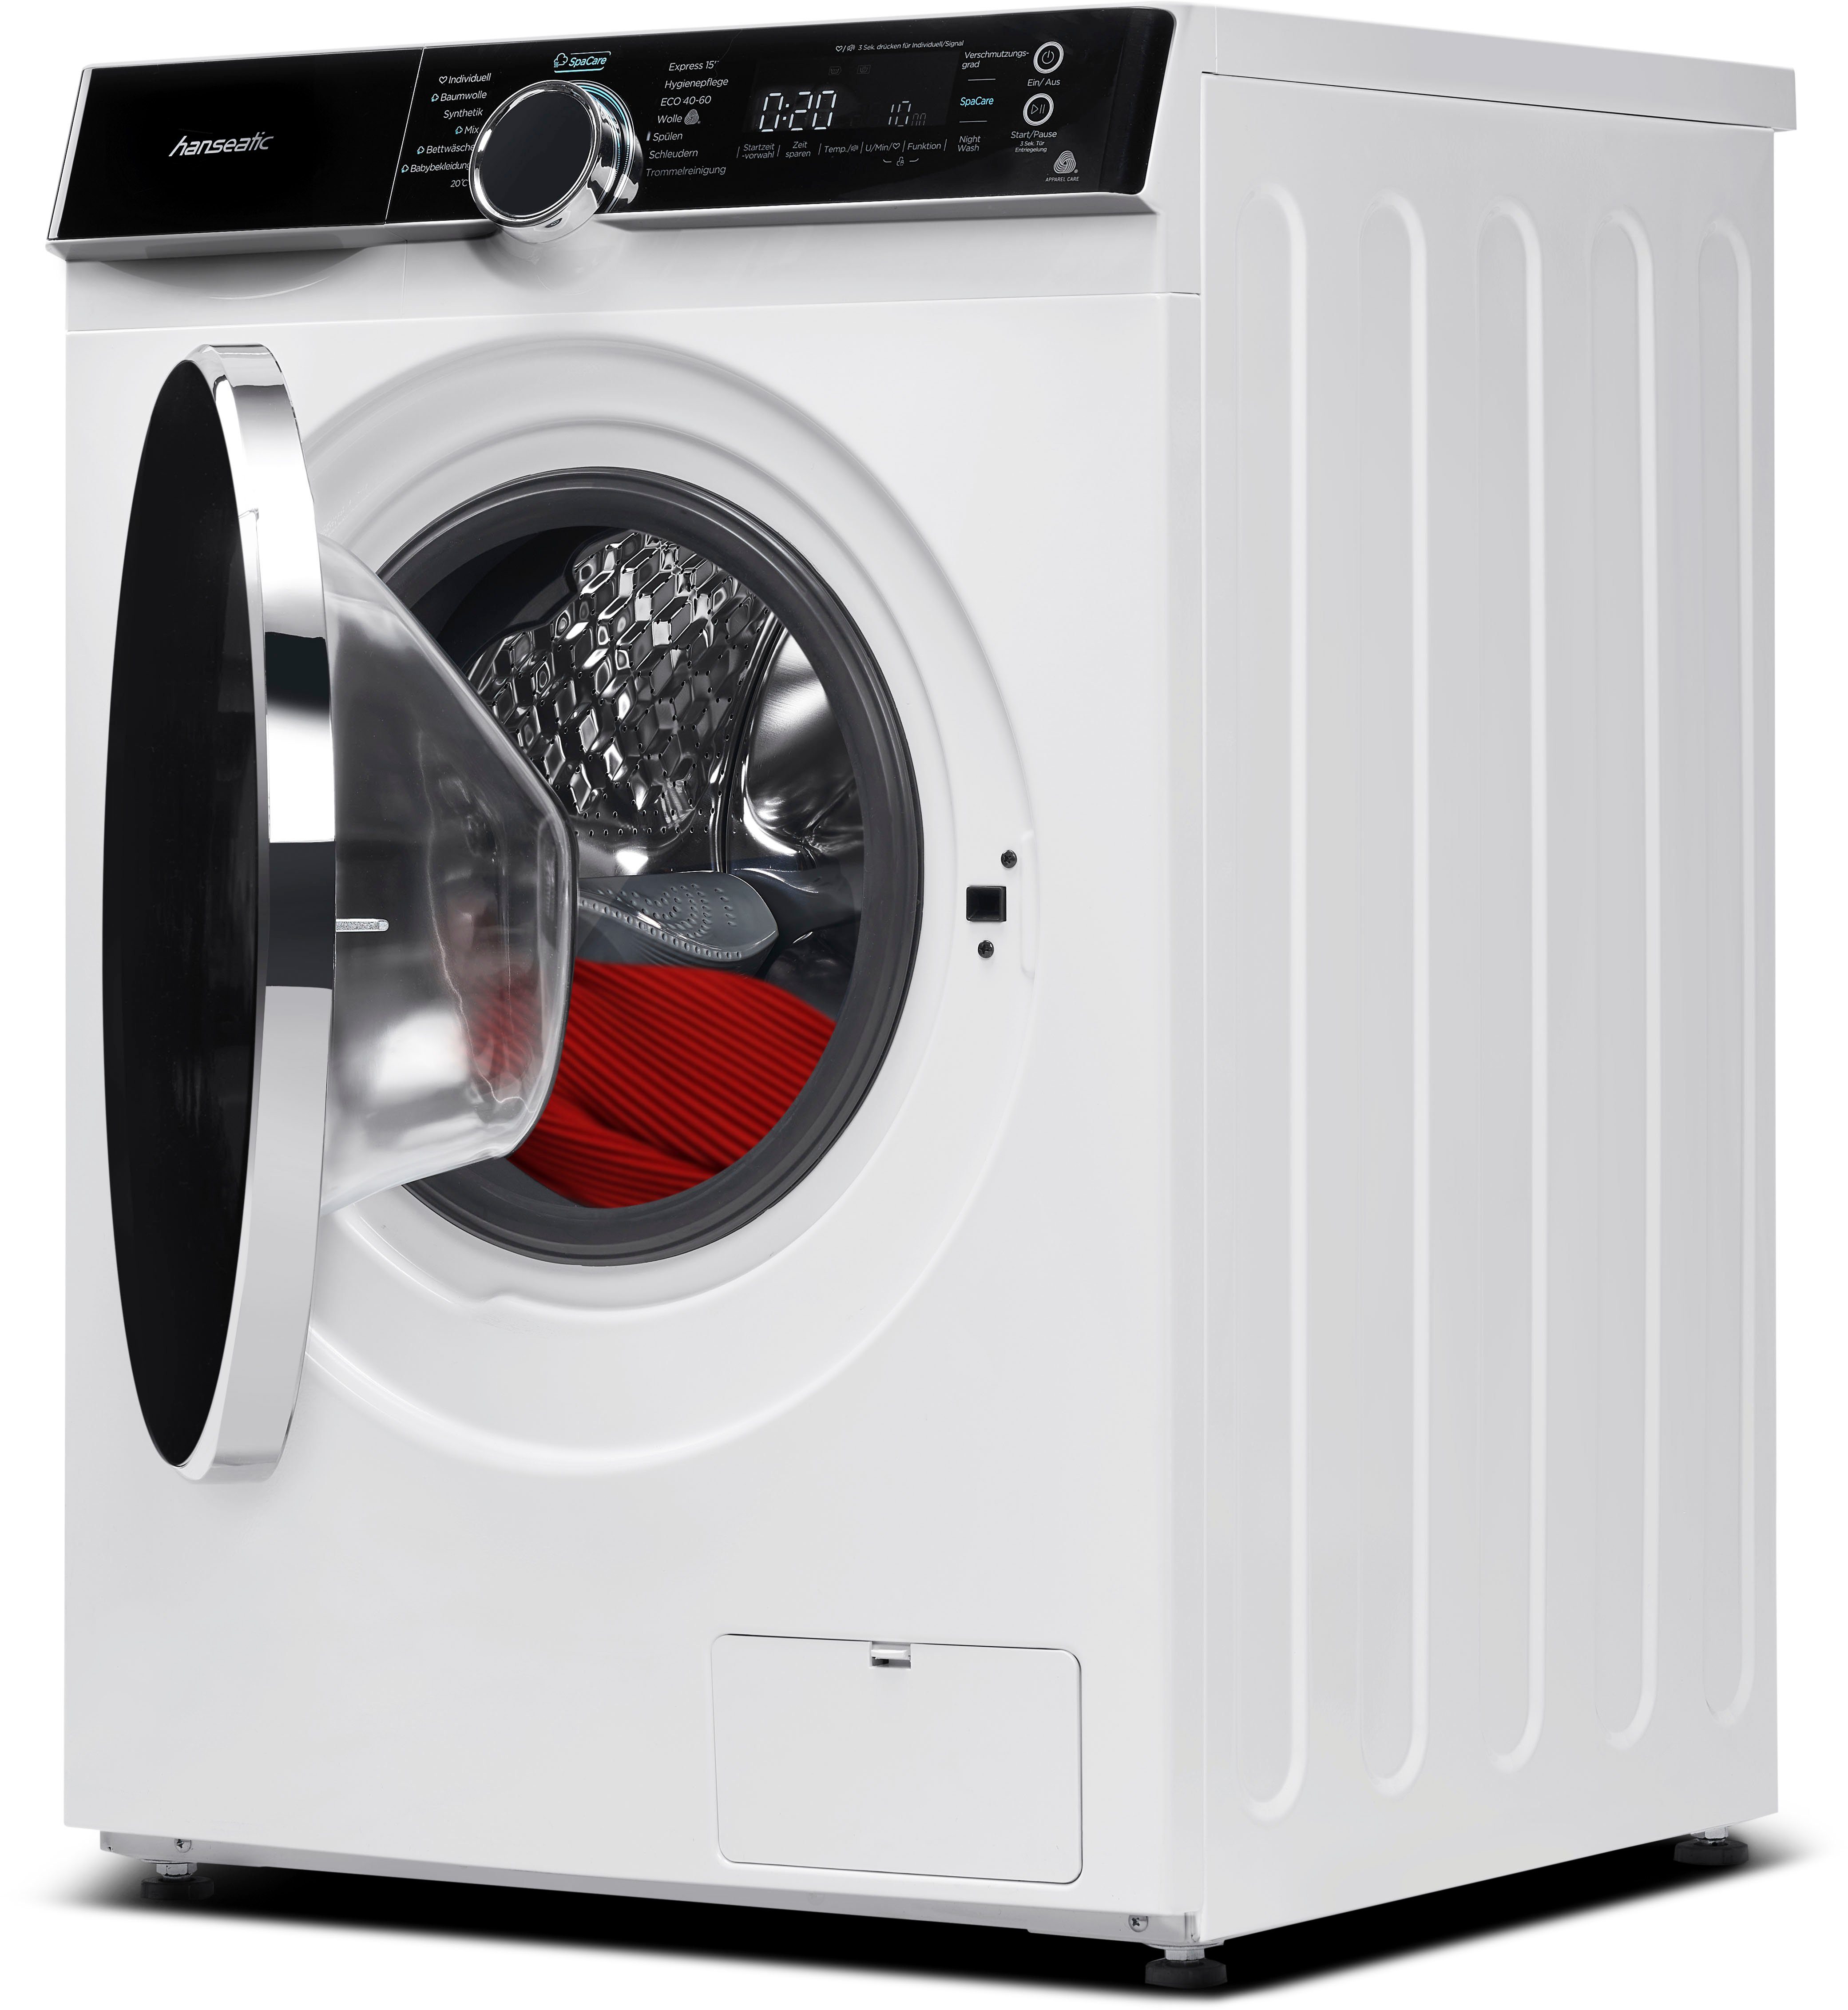 HWMK814A, Waschmaschine 1400 Mengenautomatik, Überlaufschutz, Nachtwaschprogramm, 8 U/min, Dampfoption kg, Hanseatic